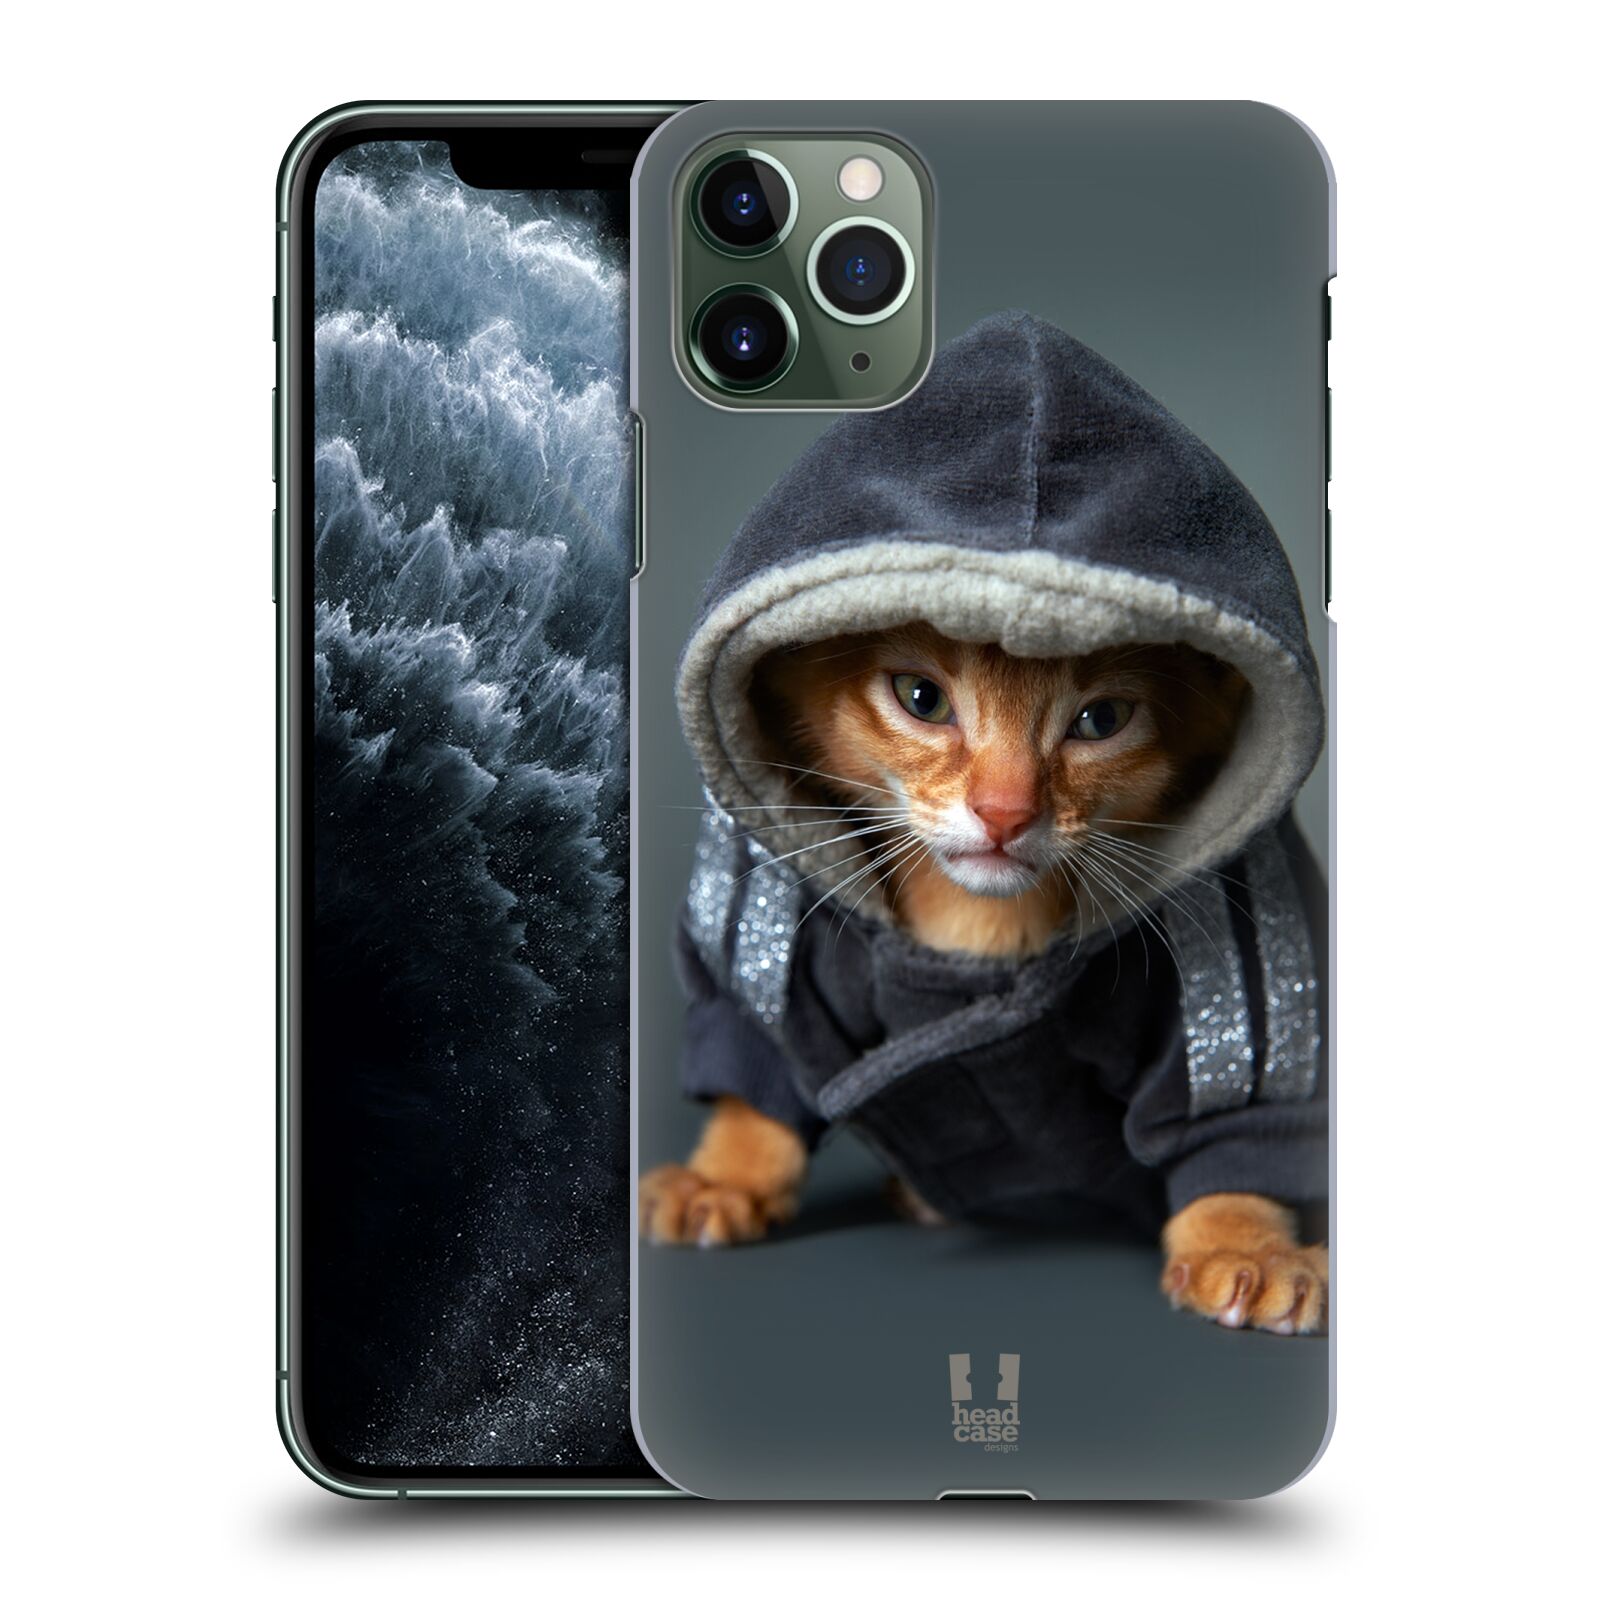 Pouzdro na mobil Apple Iphone 11 PRO MAX - HEAD CASE - vzor Legrační zvířátka kotě/kočička s kapucí